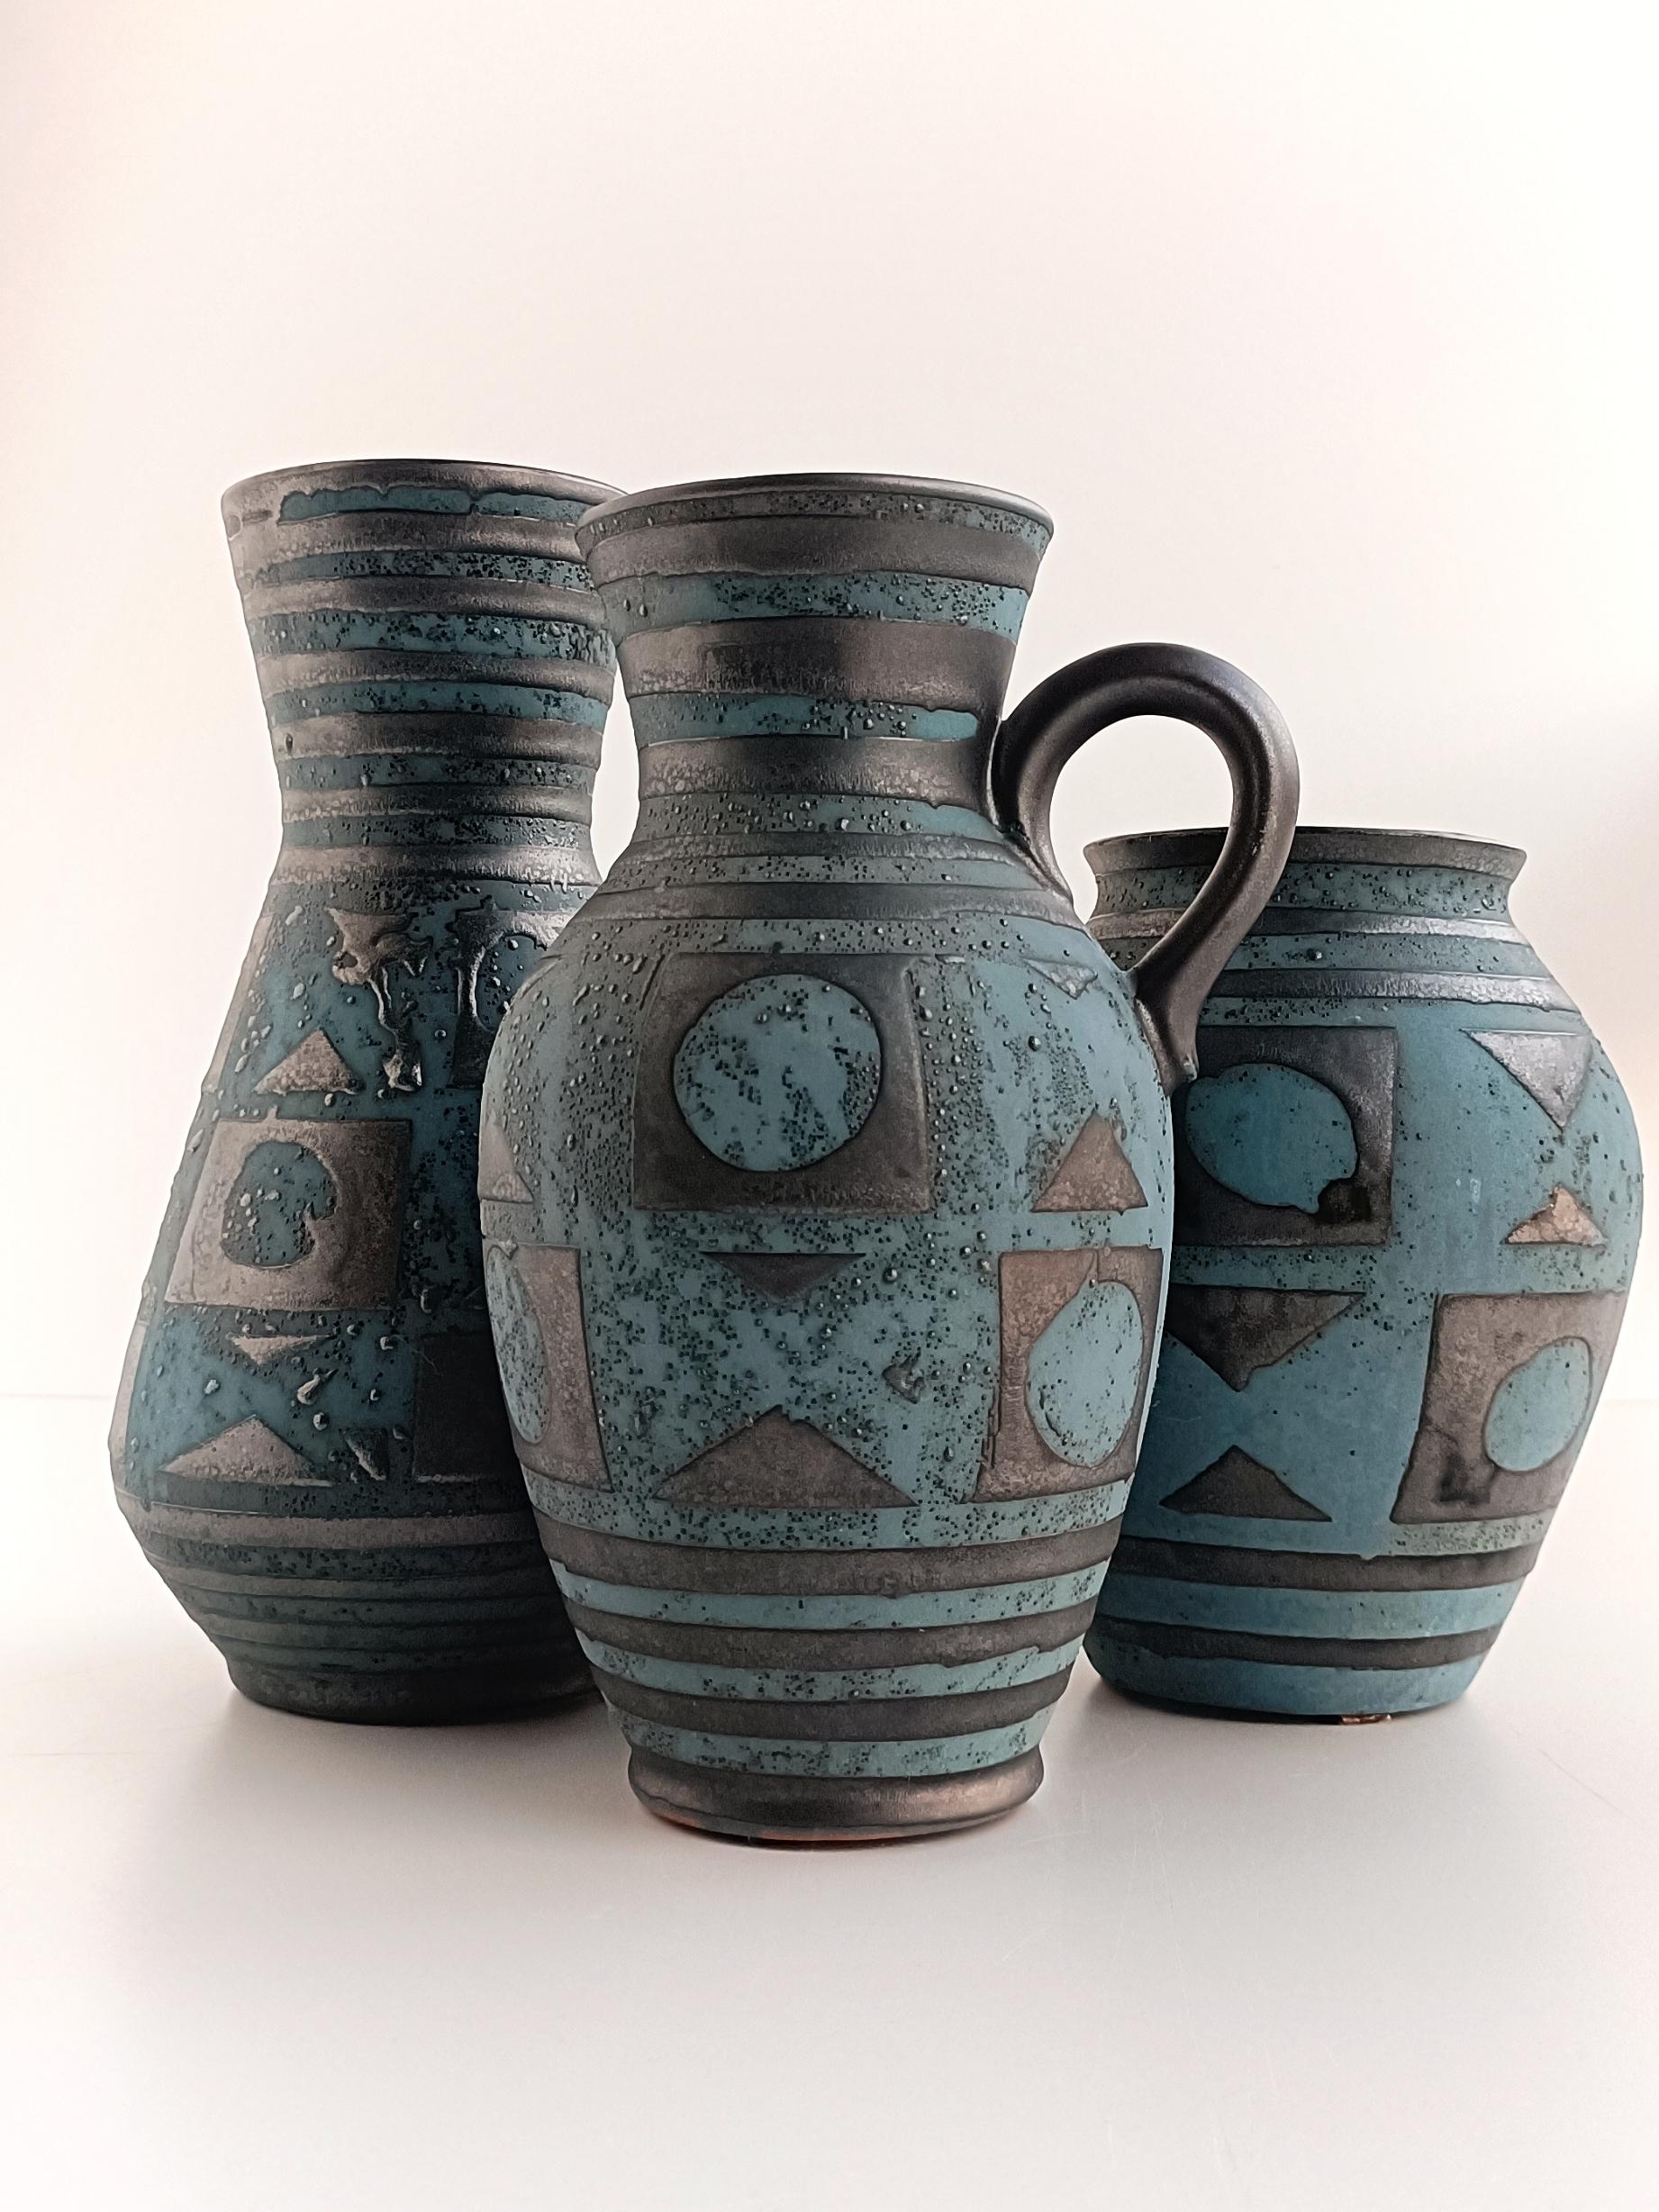 Ces vases Art Pottery Ankara Decor de Carstens T�önnieshoff, datant des années 1950, sont en effet des pièces exquises du design moderne du milieu du siècle. Carstens Tönnieshoff était un fabricant de céramique renommé basé en Allemagne de l'Ouest au